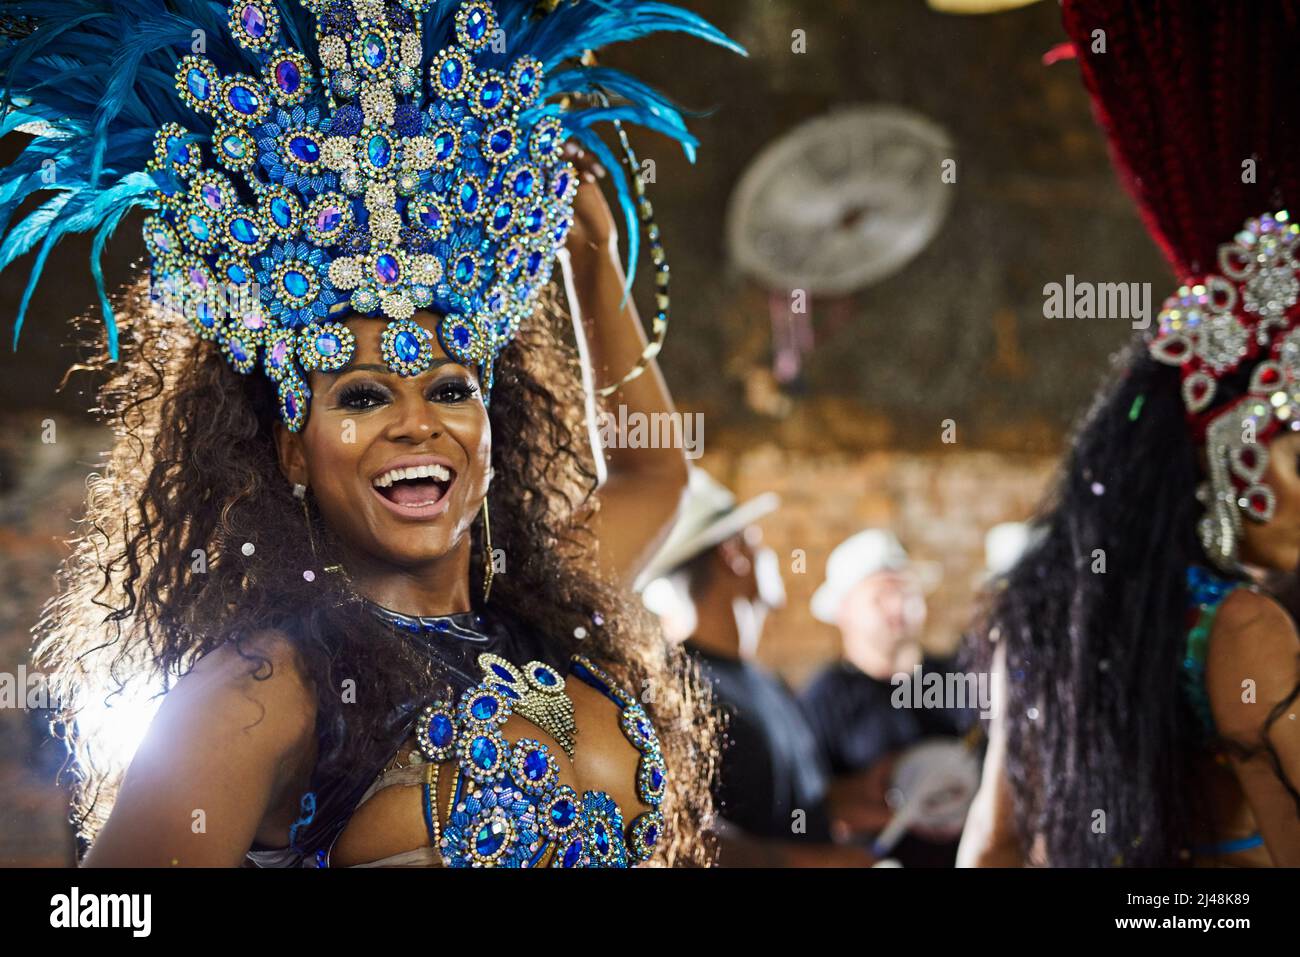 Machen Sie sich bereit für eine elektrisierende Leistung. Porträt einer Samba-Tänzerin, die an einem Karneval auftrat. Stockfoto